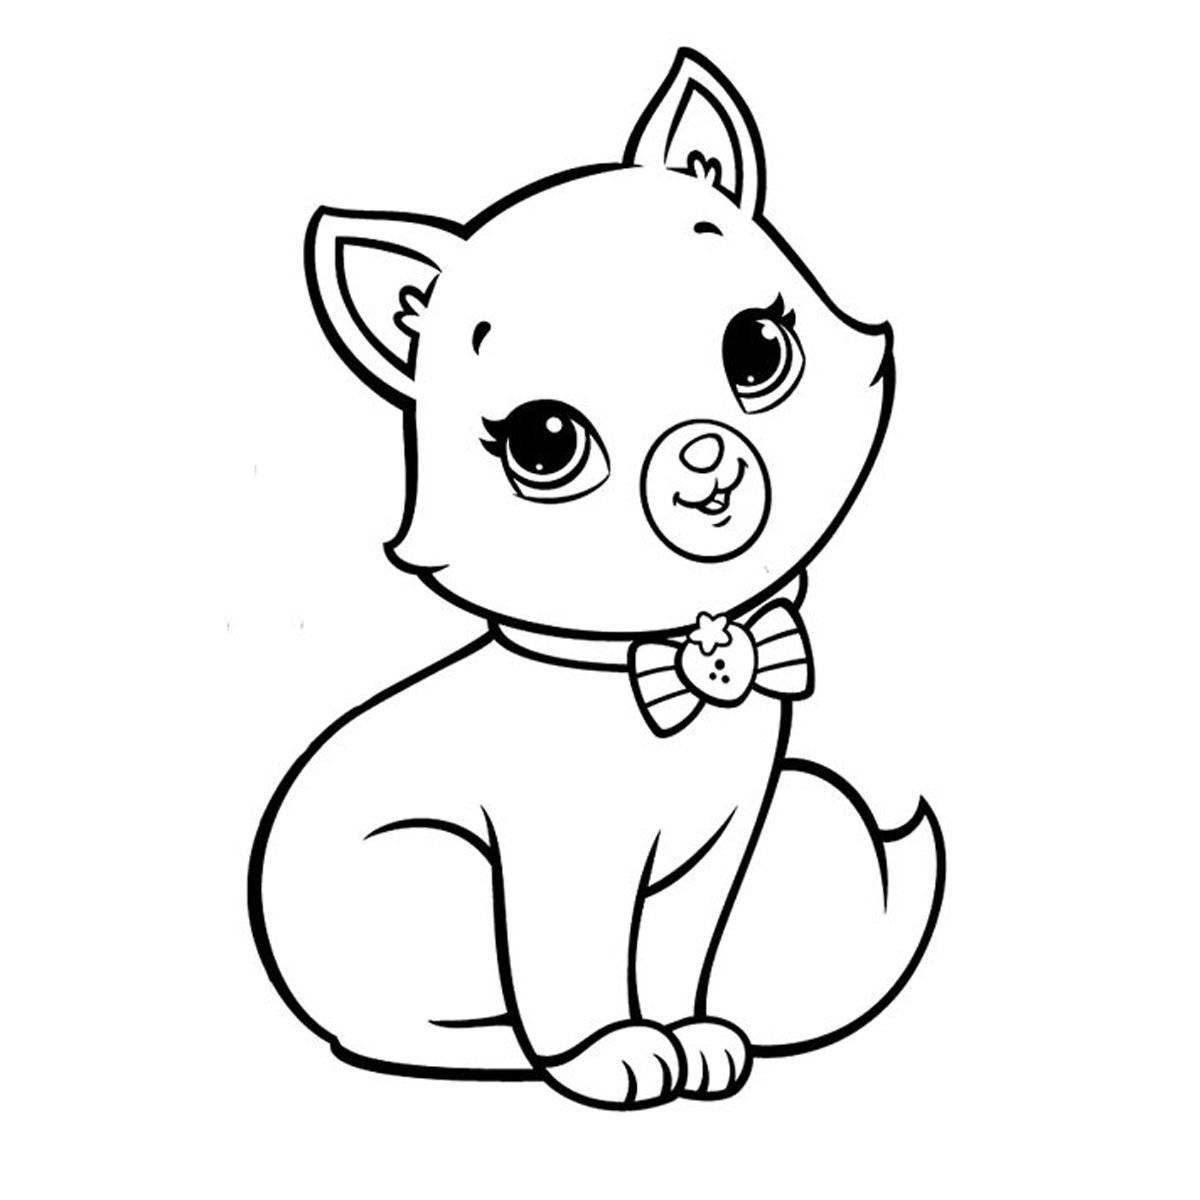 Cute little cat coloring book